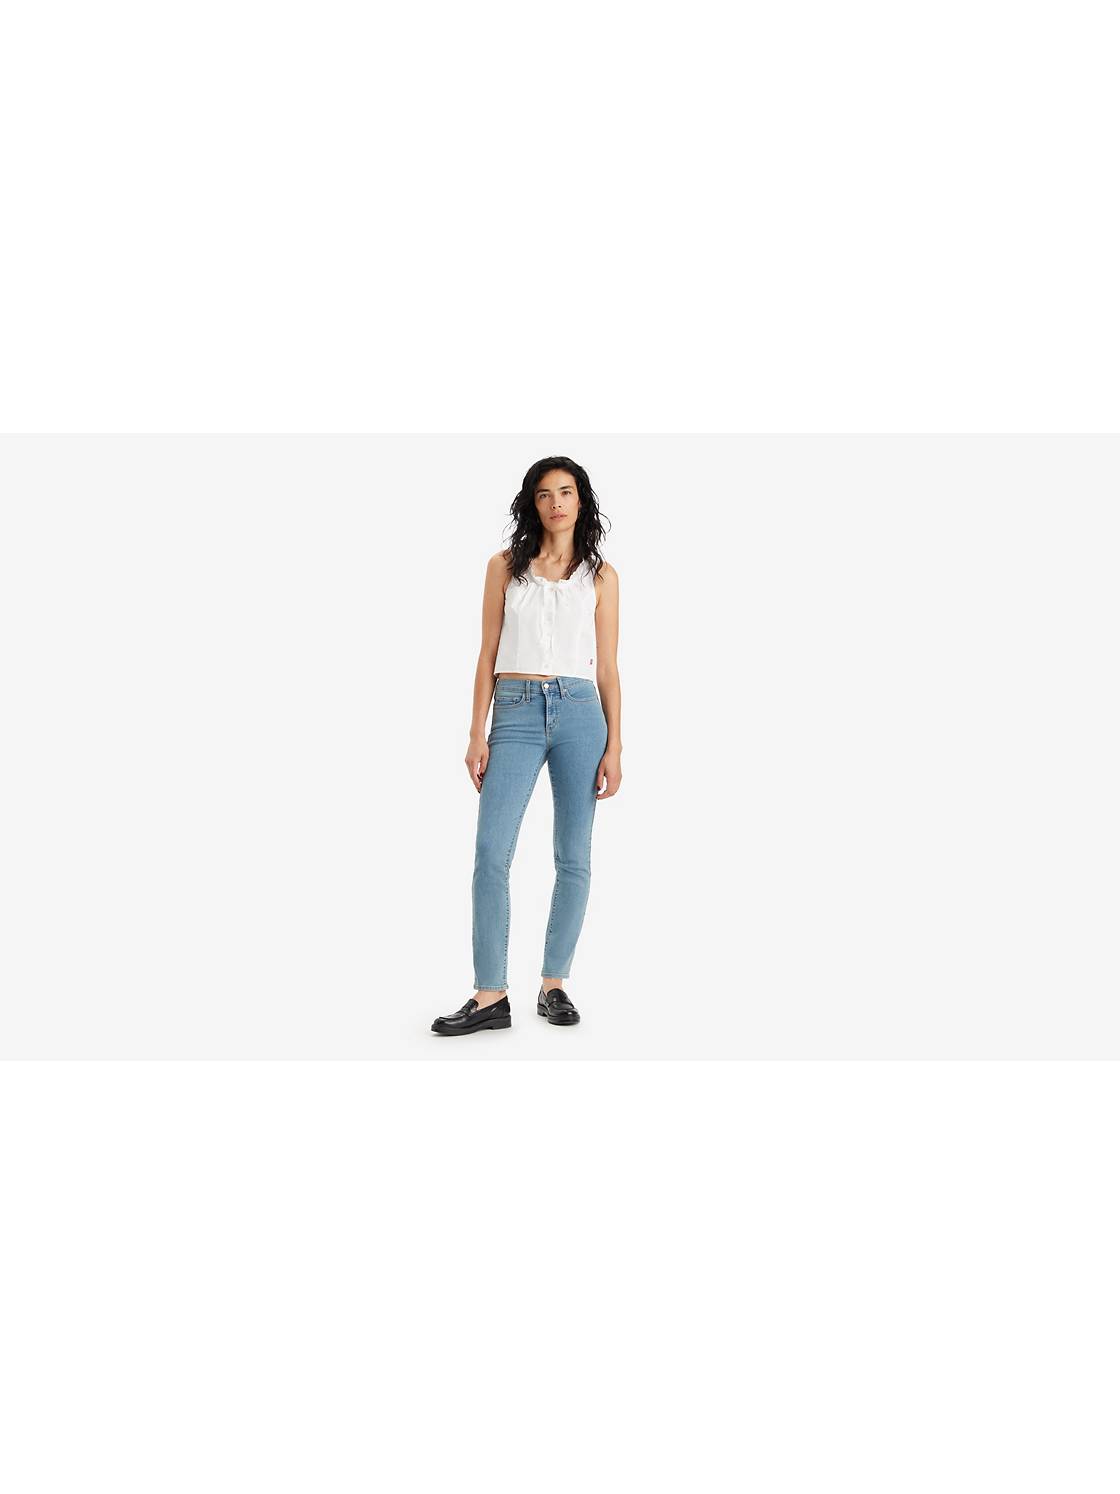 Levis Slight Curve Classic Slim Leg Jeans Ladies Size 31 – Roper-DesigneR